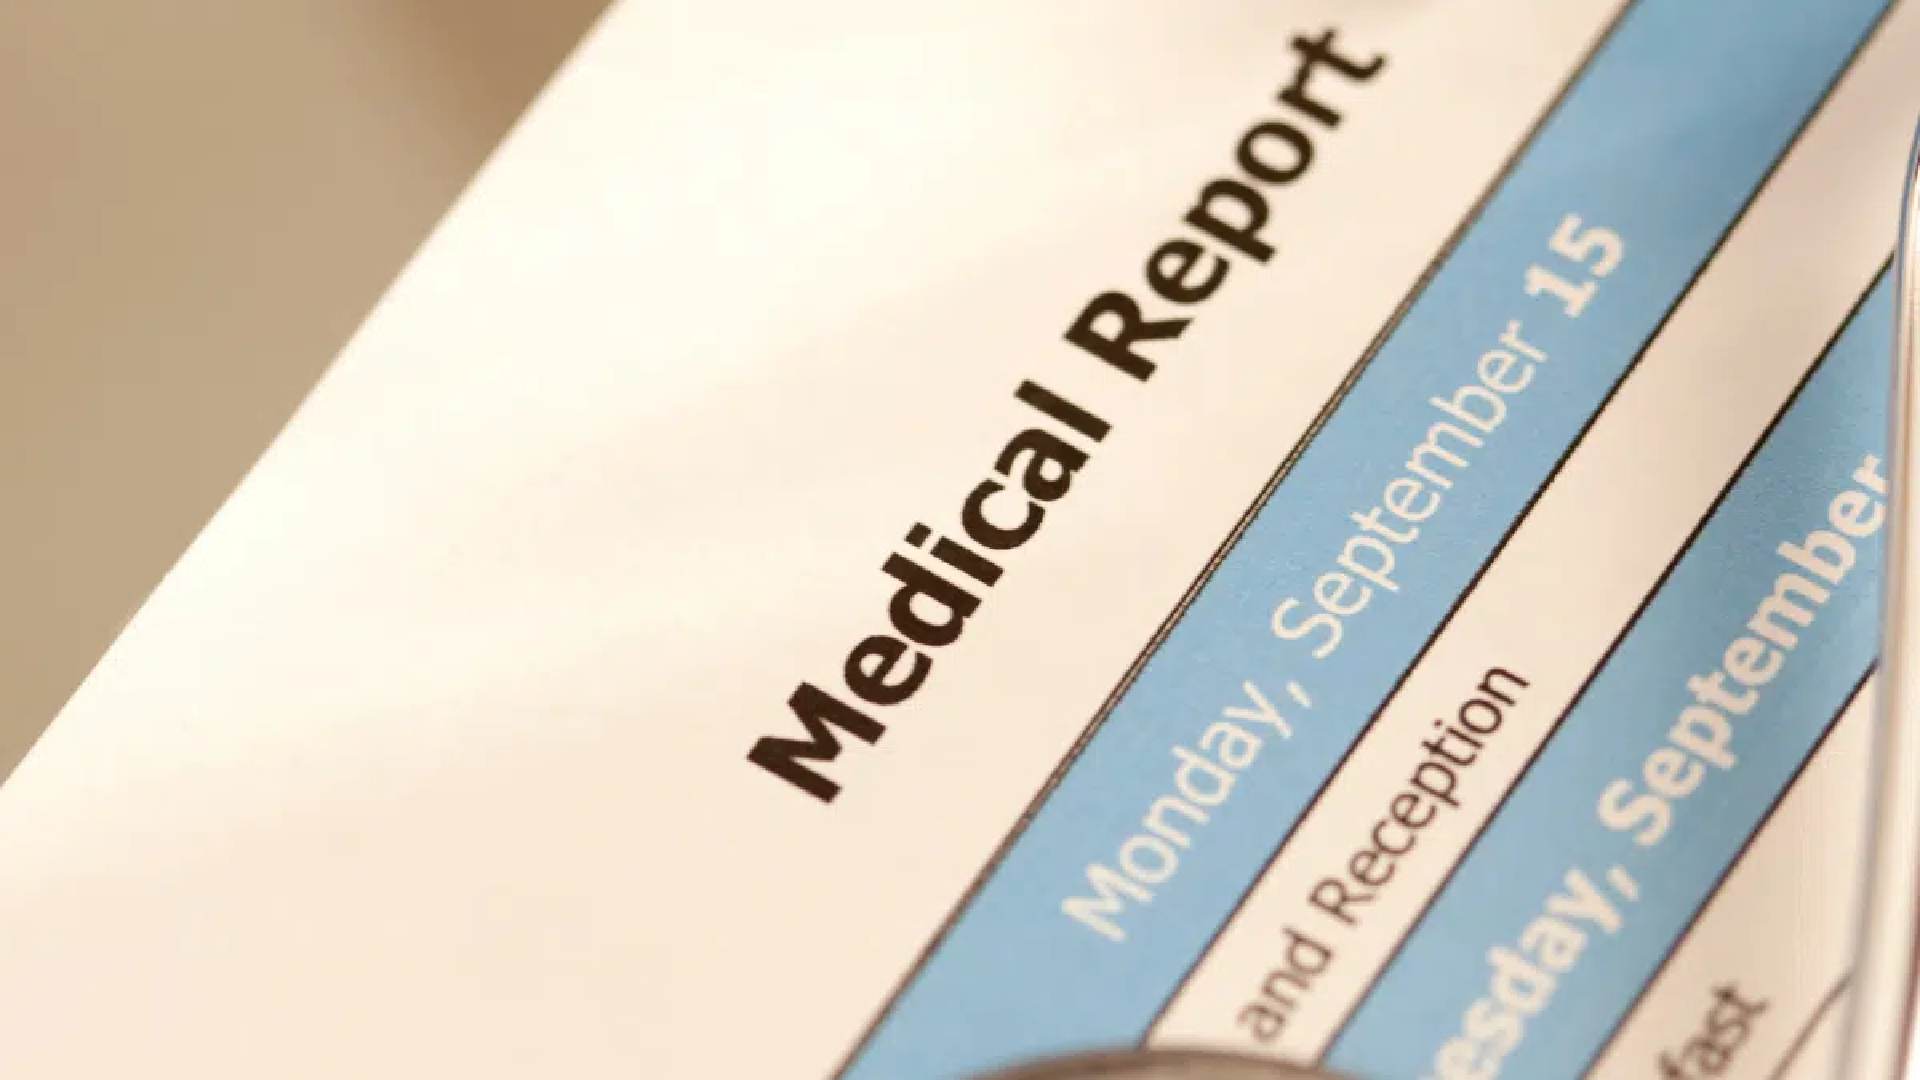 Efada medical report